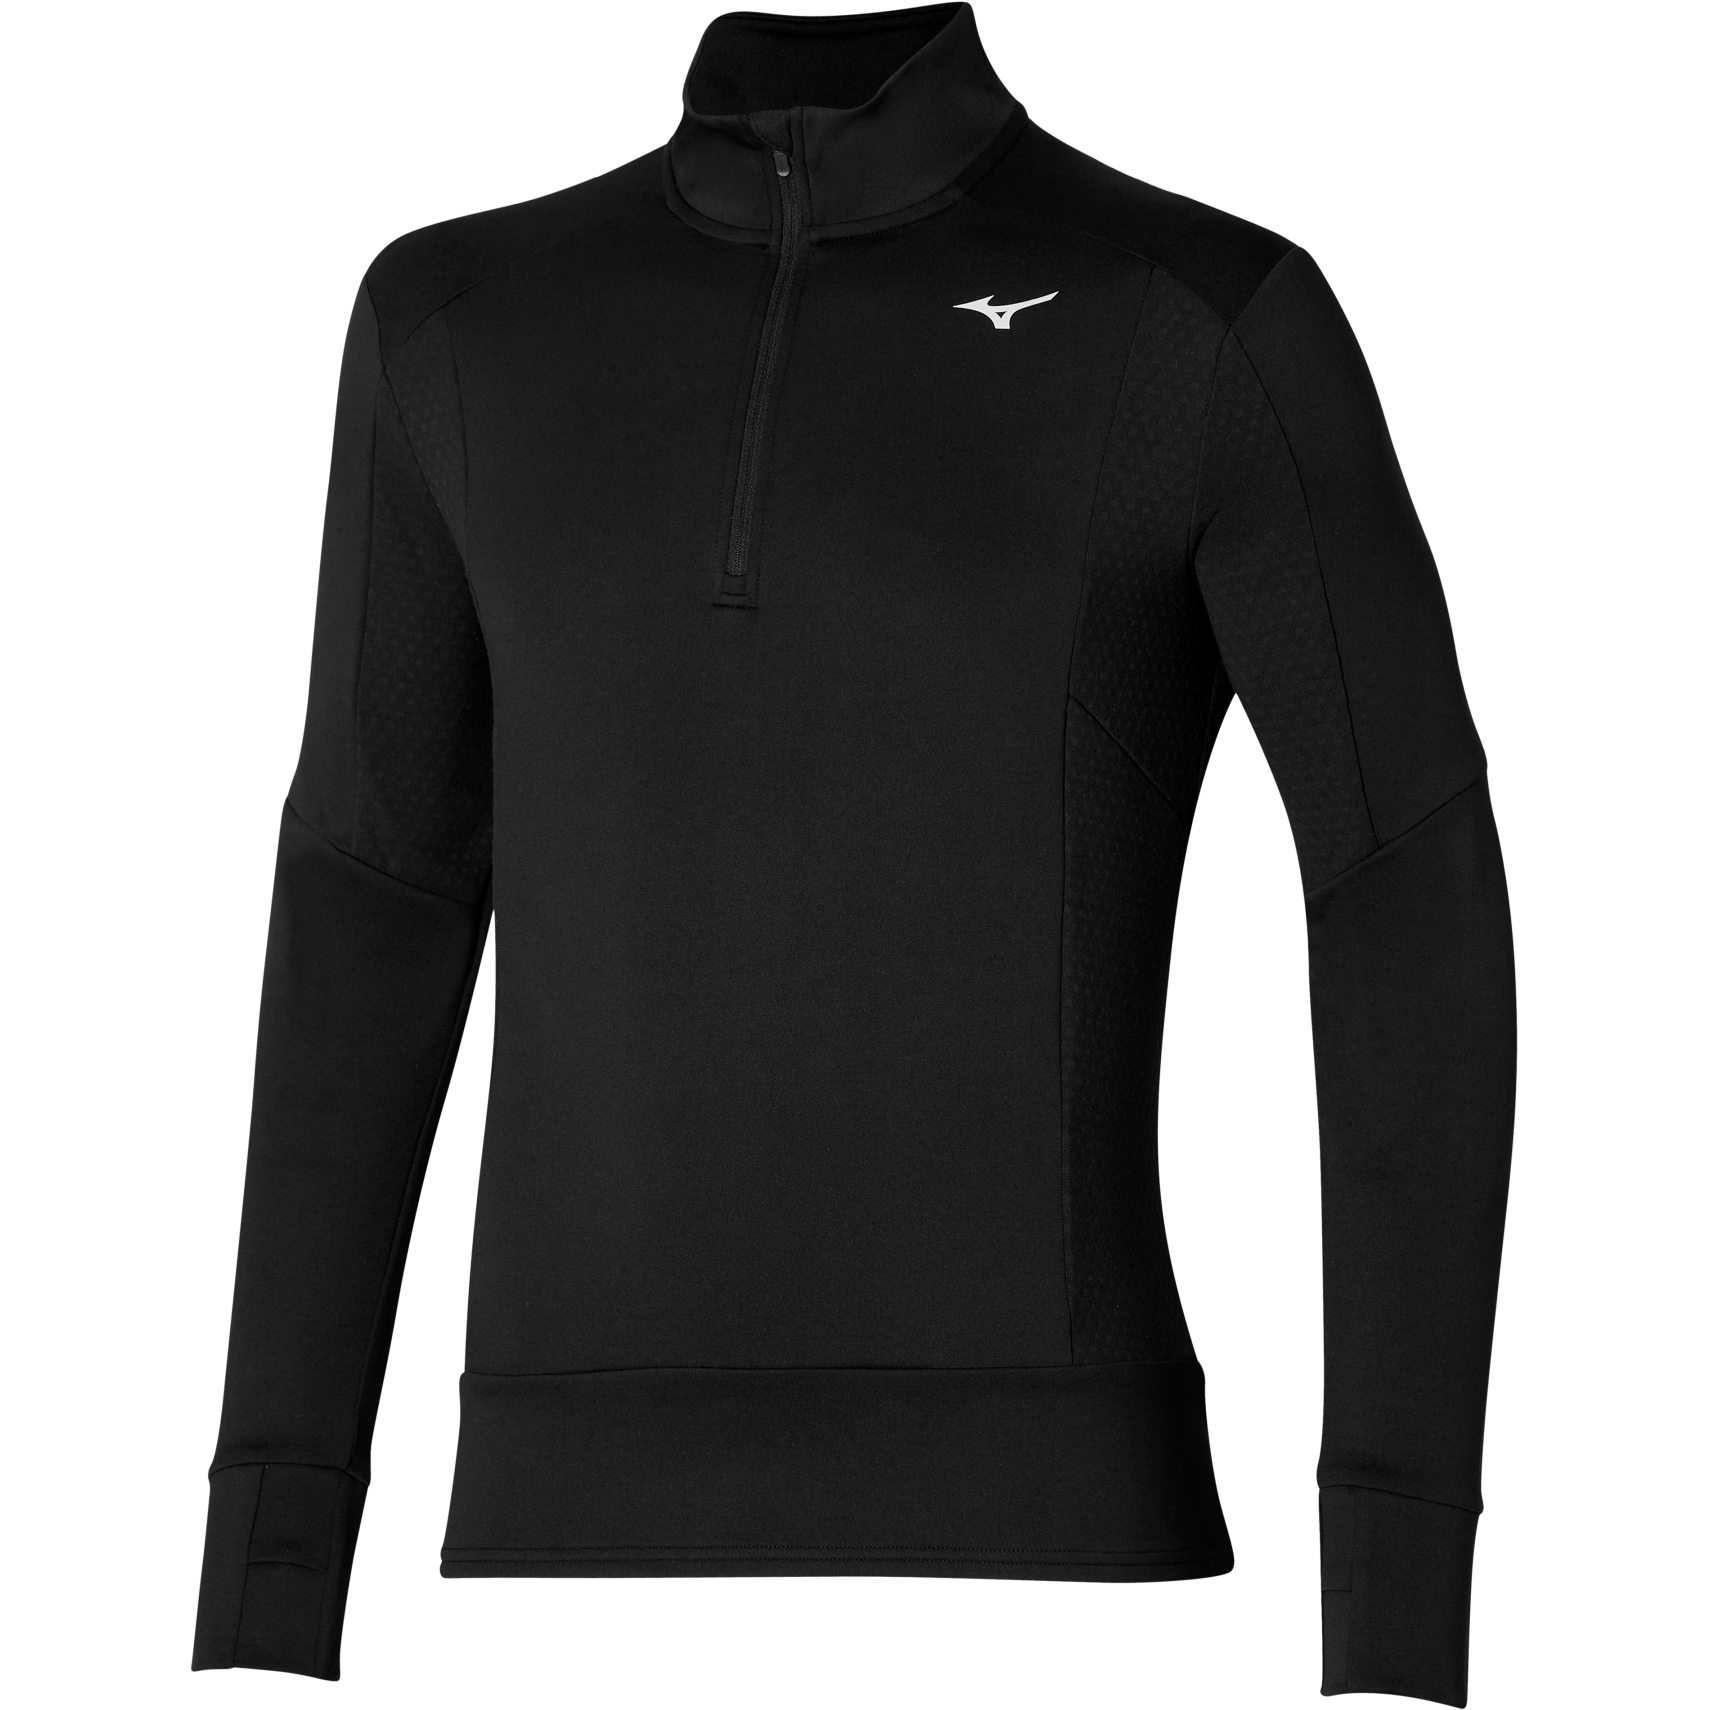 Productfoto van Mizuno Warmalite Half Zip Shirt met Lange Mouwen Heren - Zwart